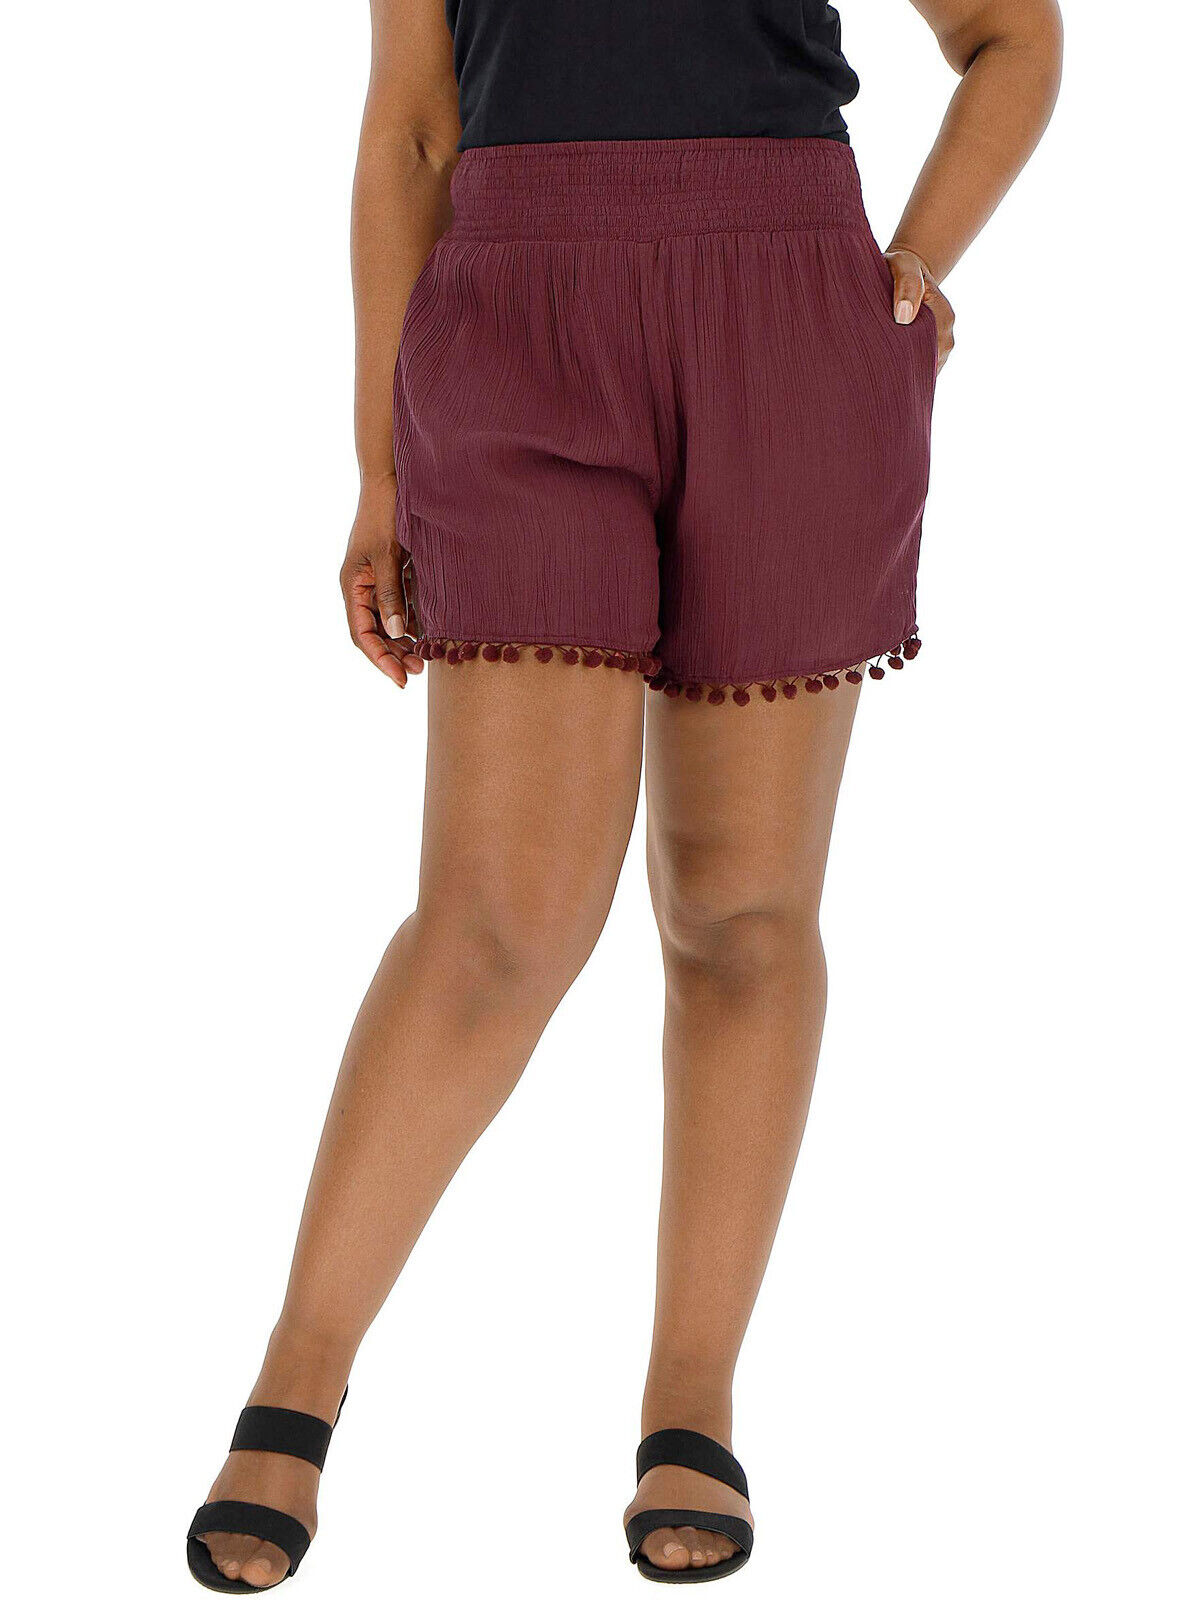 New Capsule Aubergine Crinkle Pom Pom Hem Shorts in Size 24